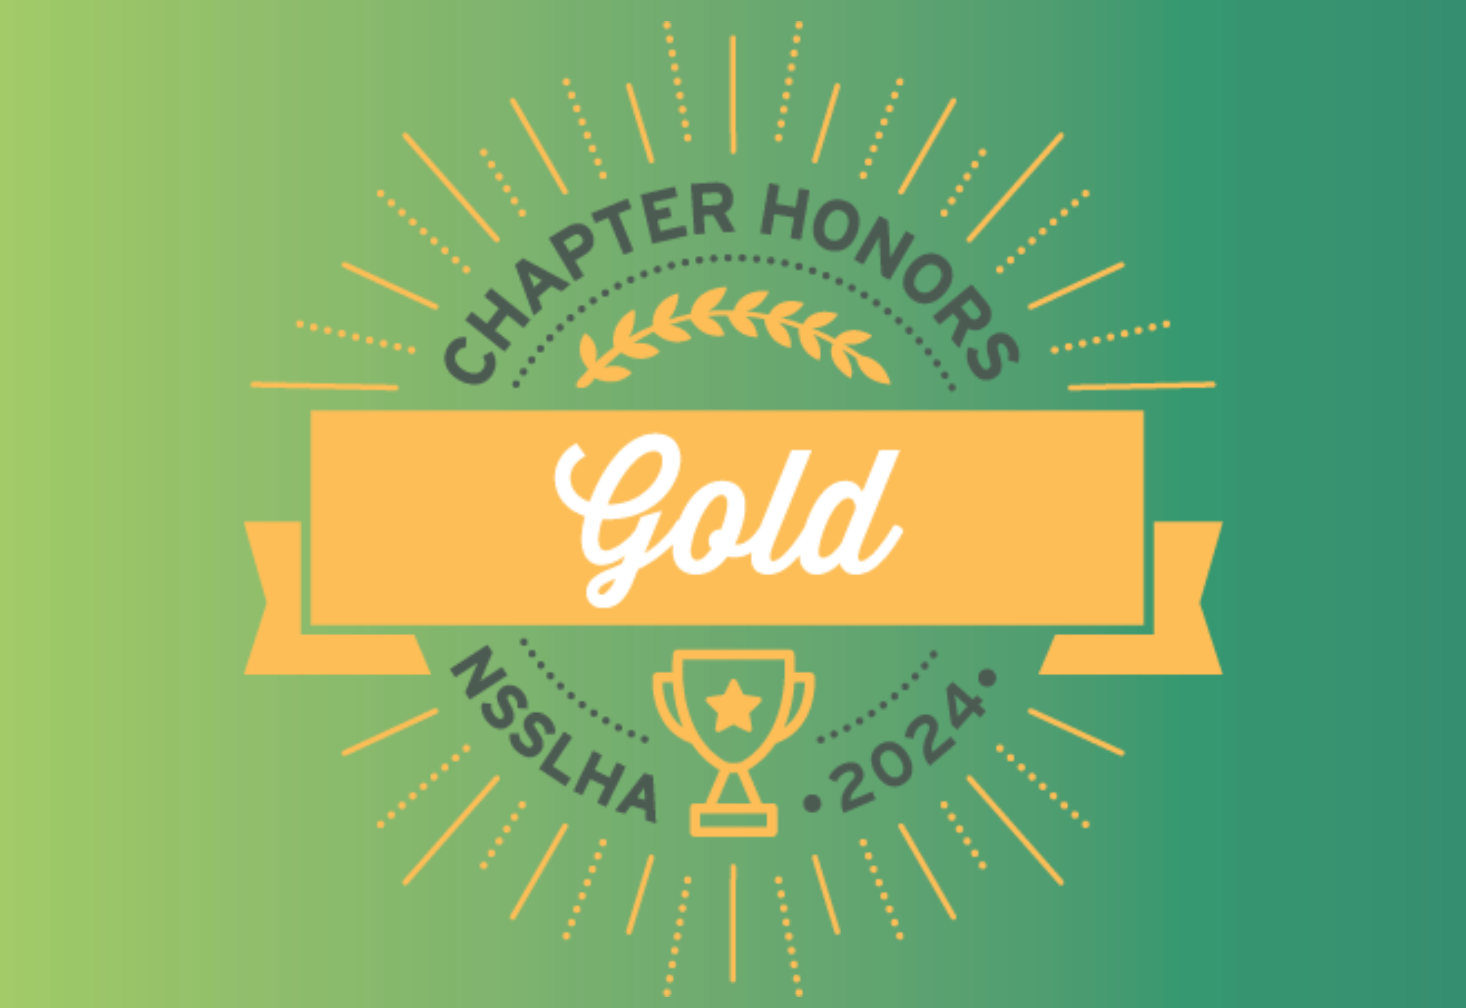 NSSLHA Gold Chapter Honors logo